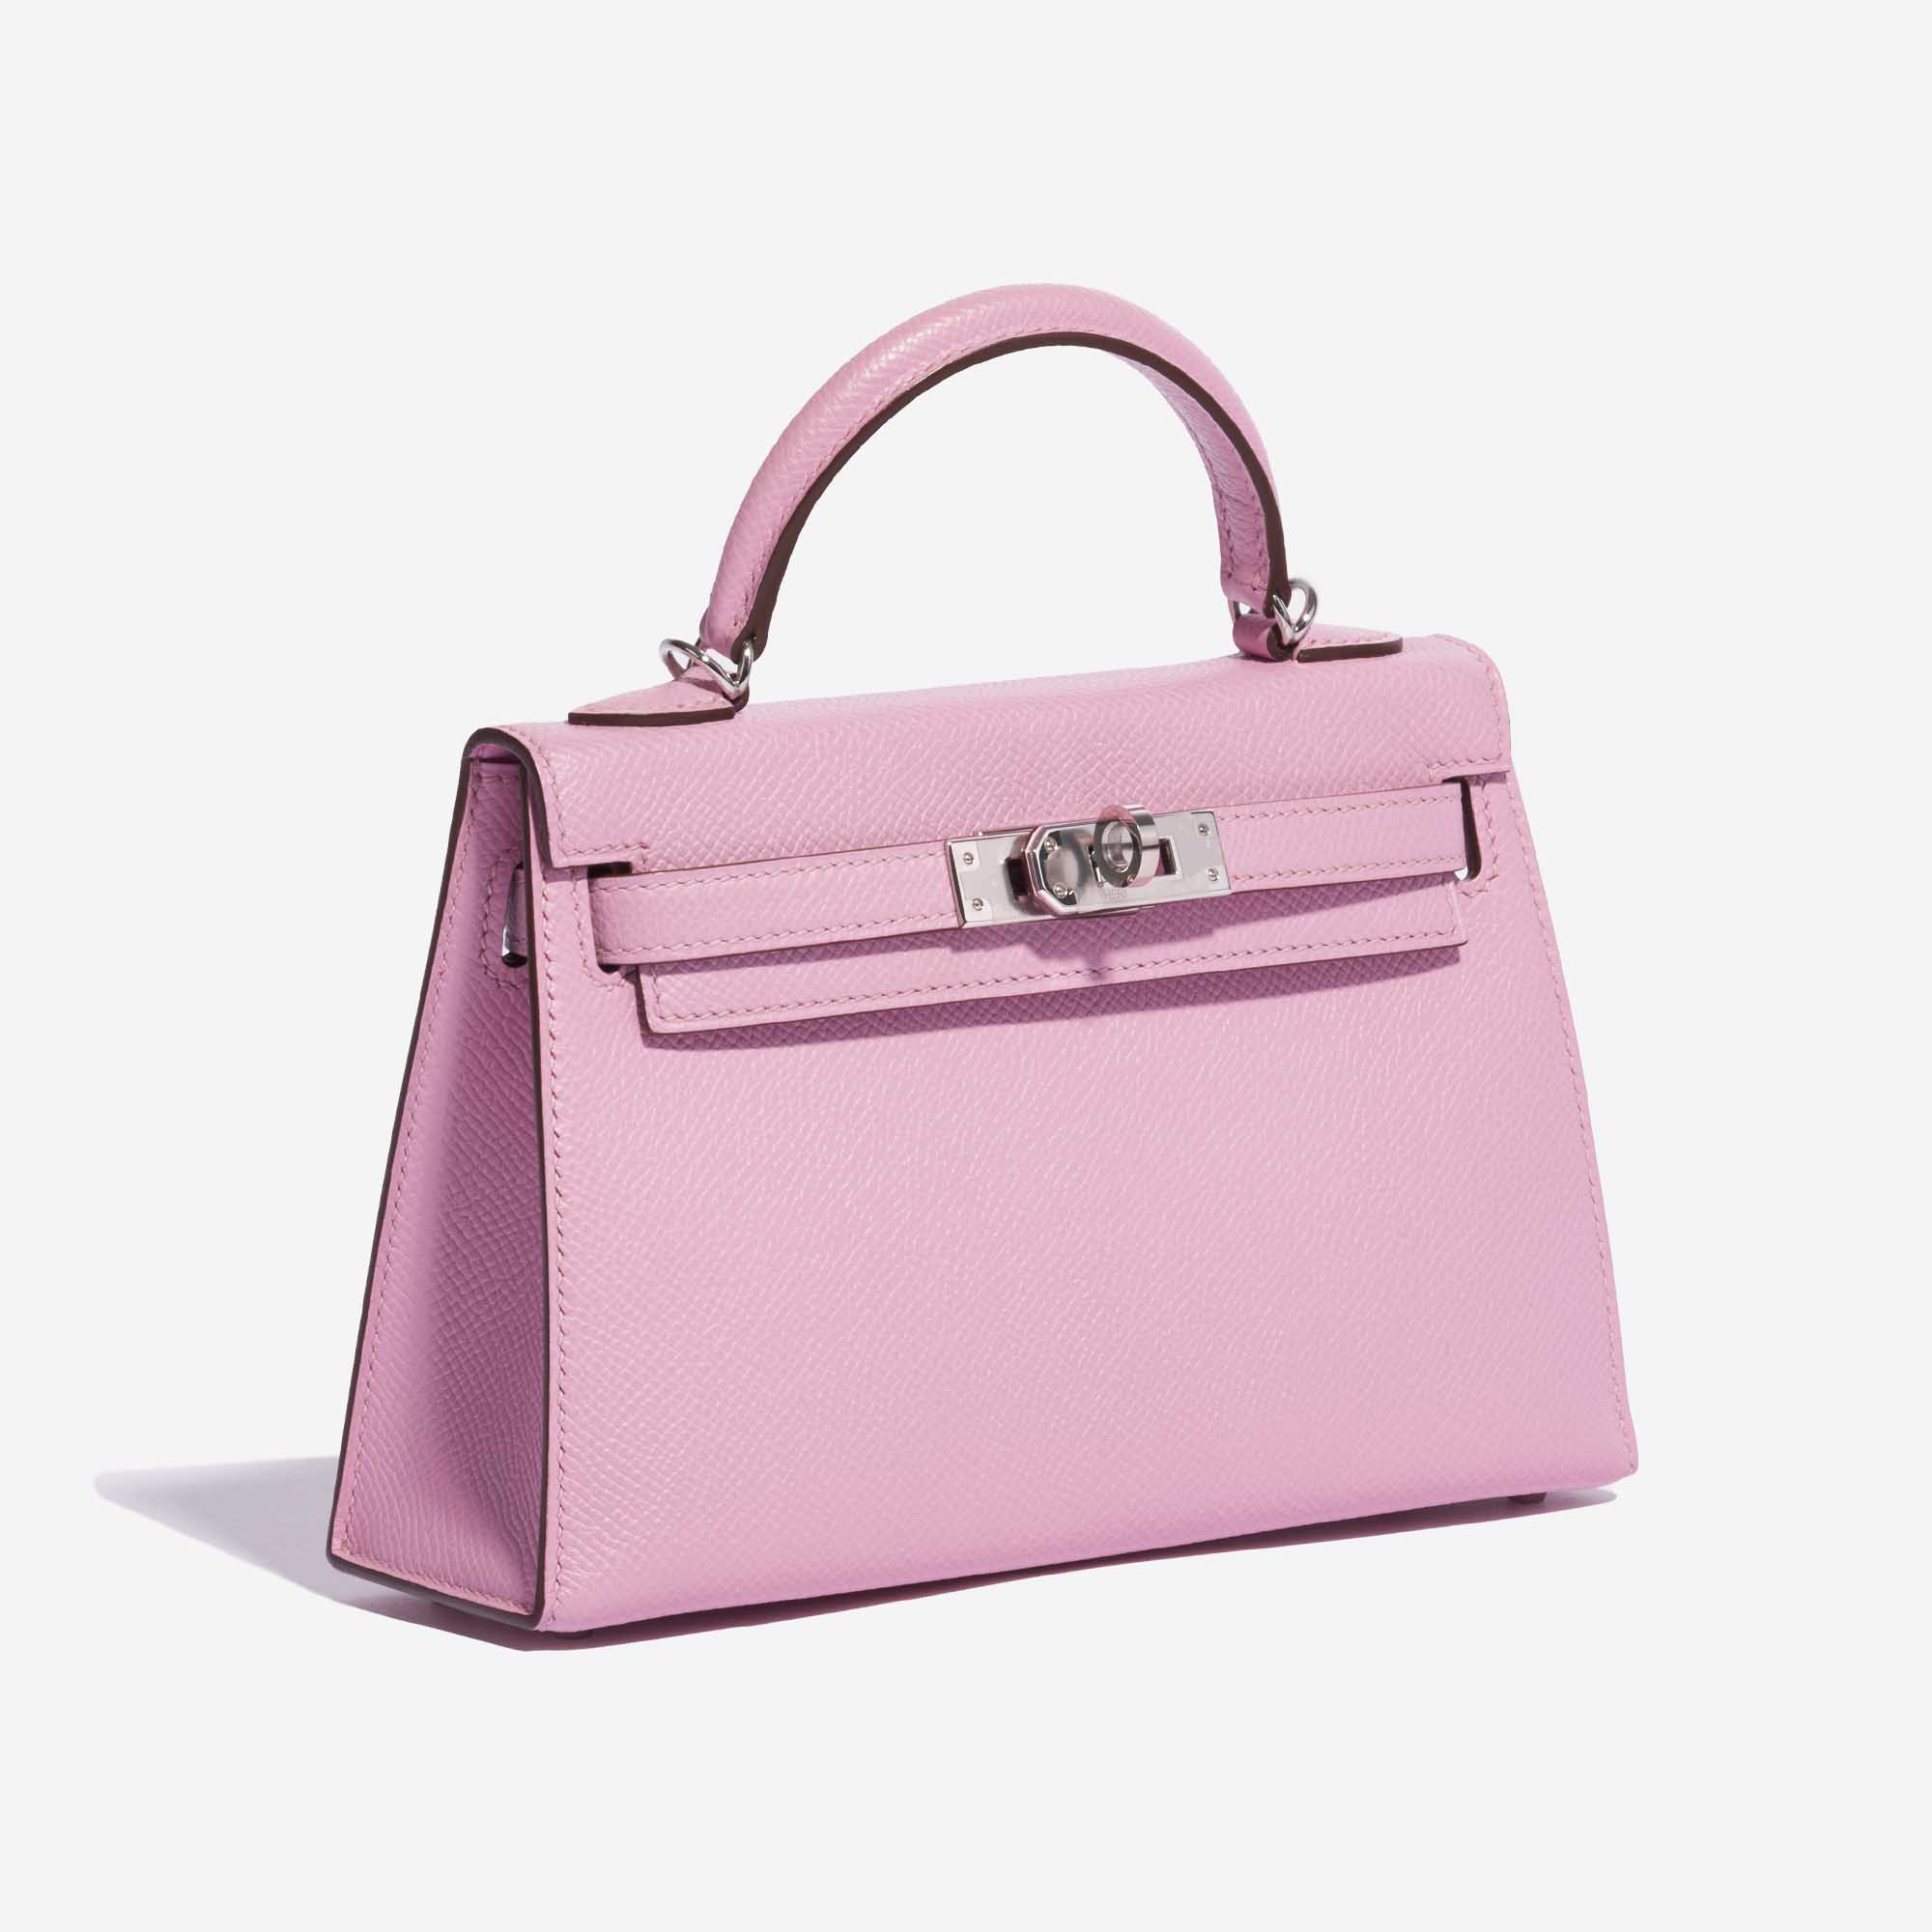 Pre-owned Hermès Tasche Kelly Mini Epsom Mauve Sylvestre Pink Side Front | Verkaufen Sie Ihre Designer-Tasche auf Saclab.com